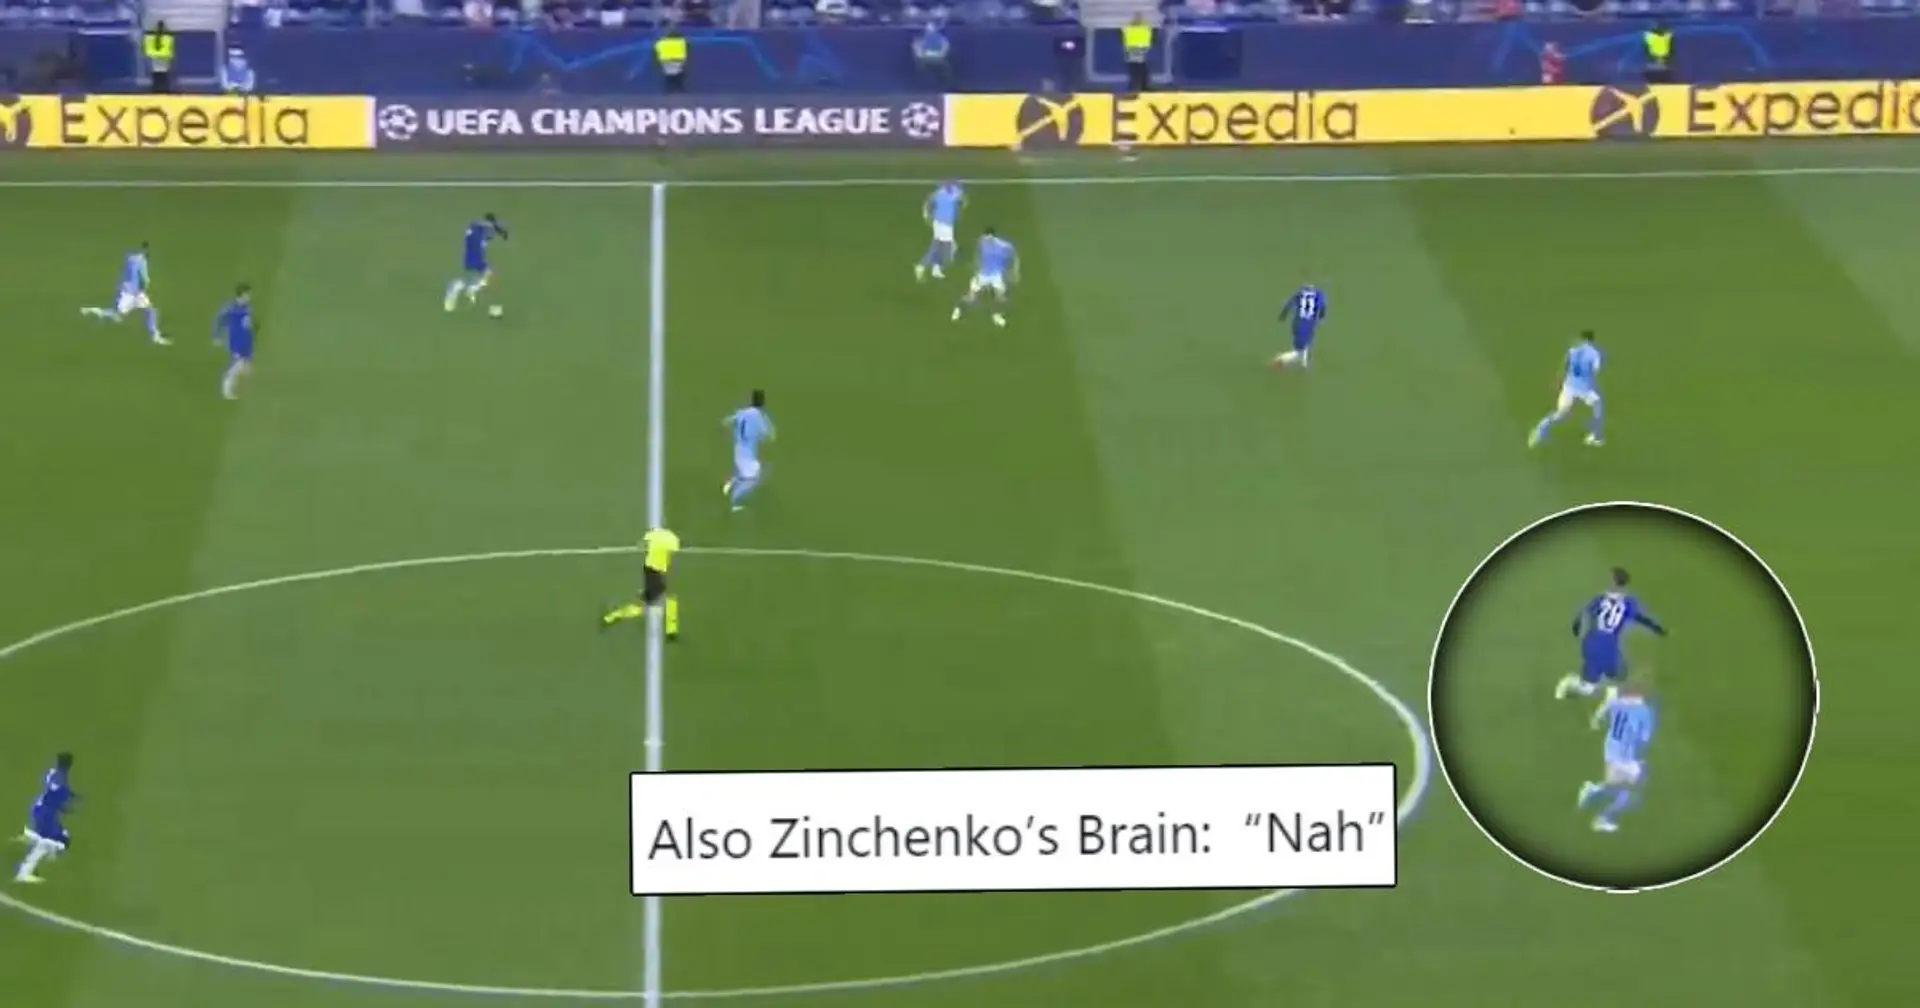 Il difensore del Man City Zinchenko criticato per la sua marcatura "pigra" in finale di Champions League